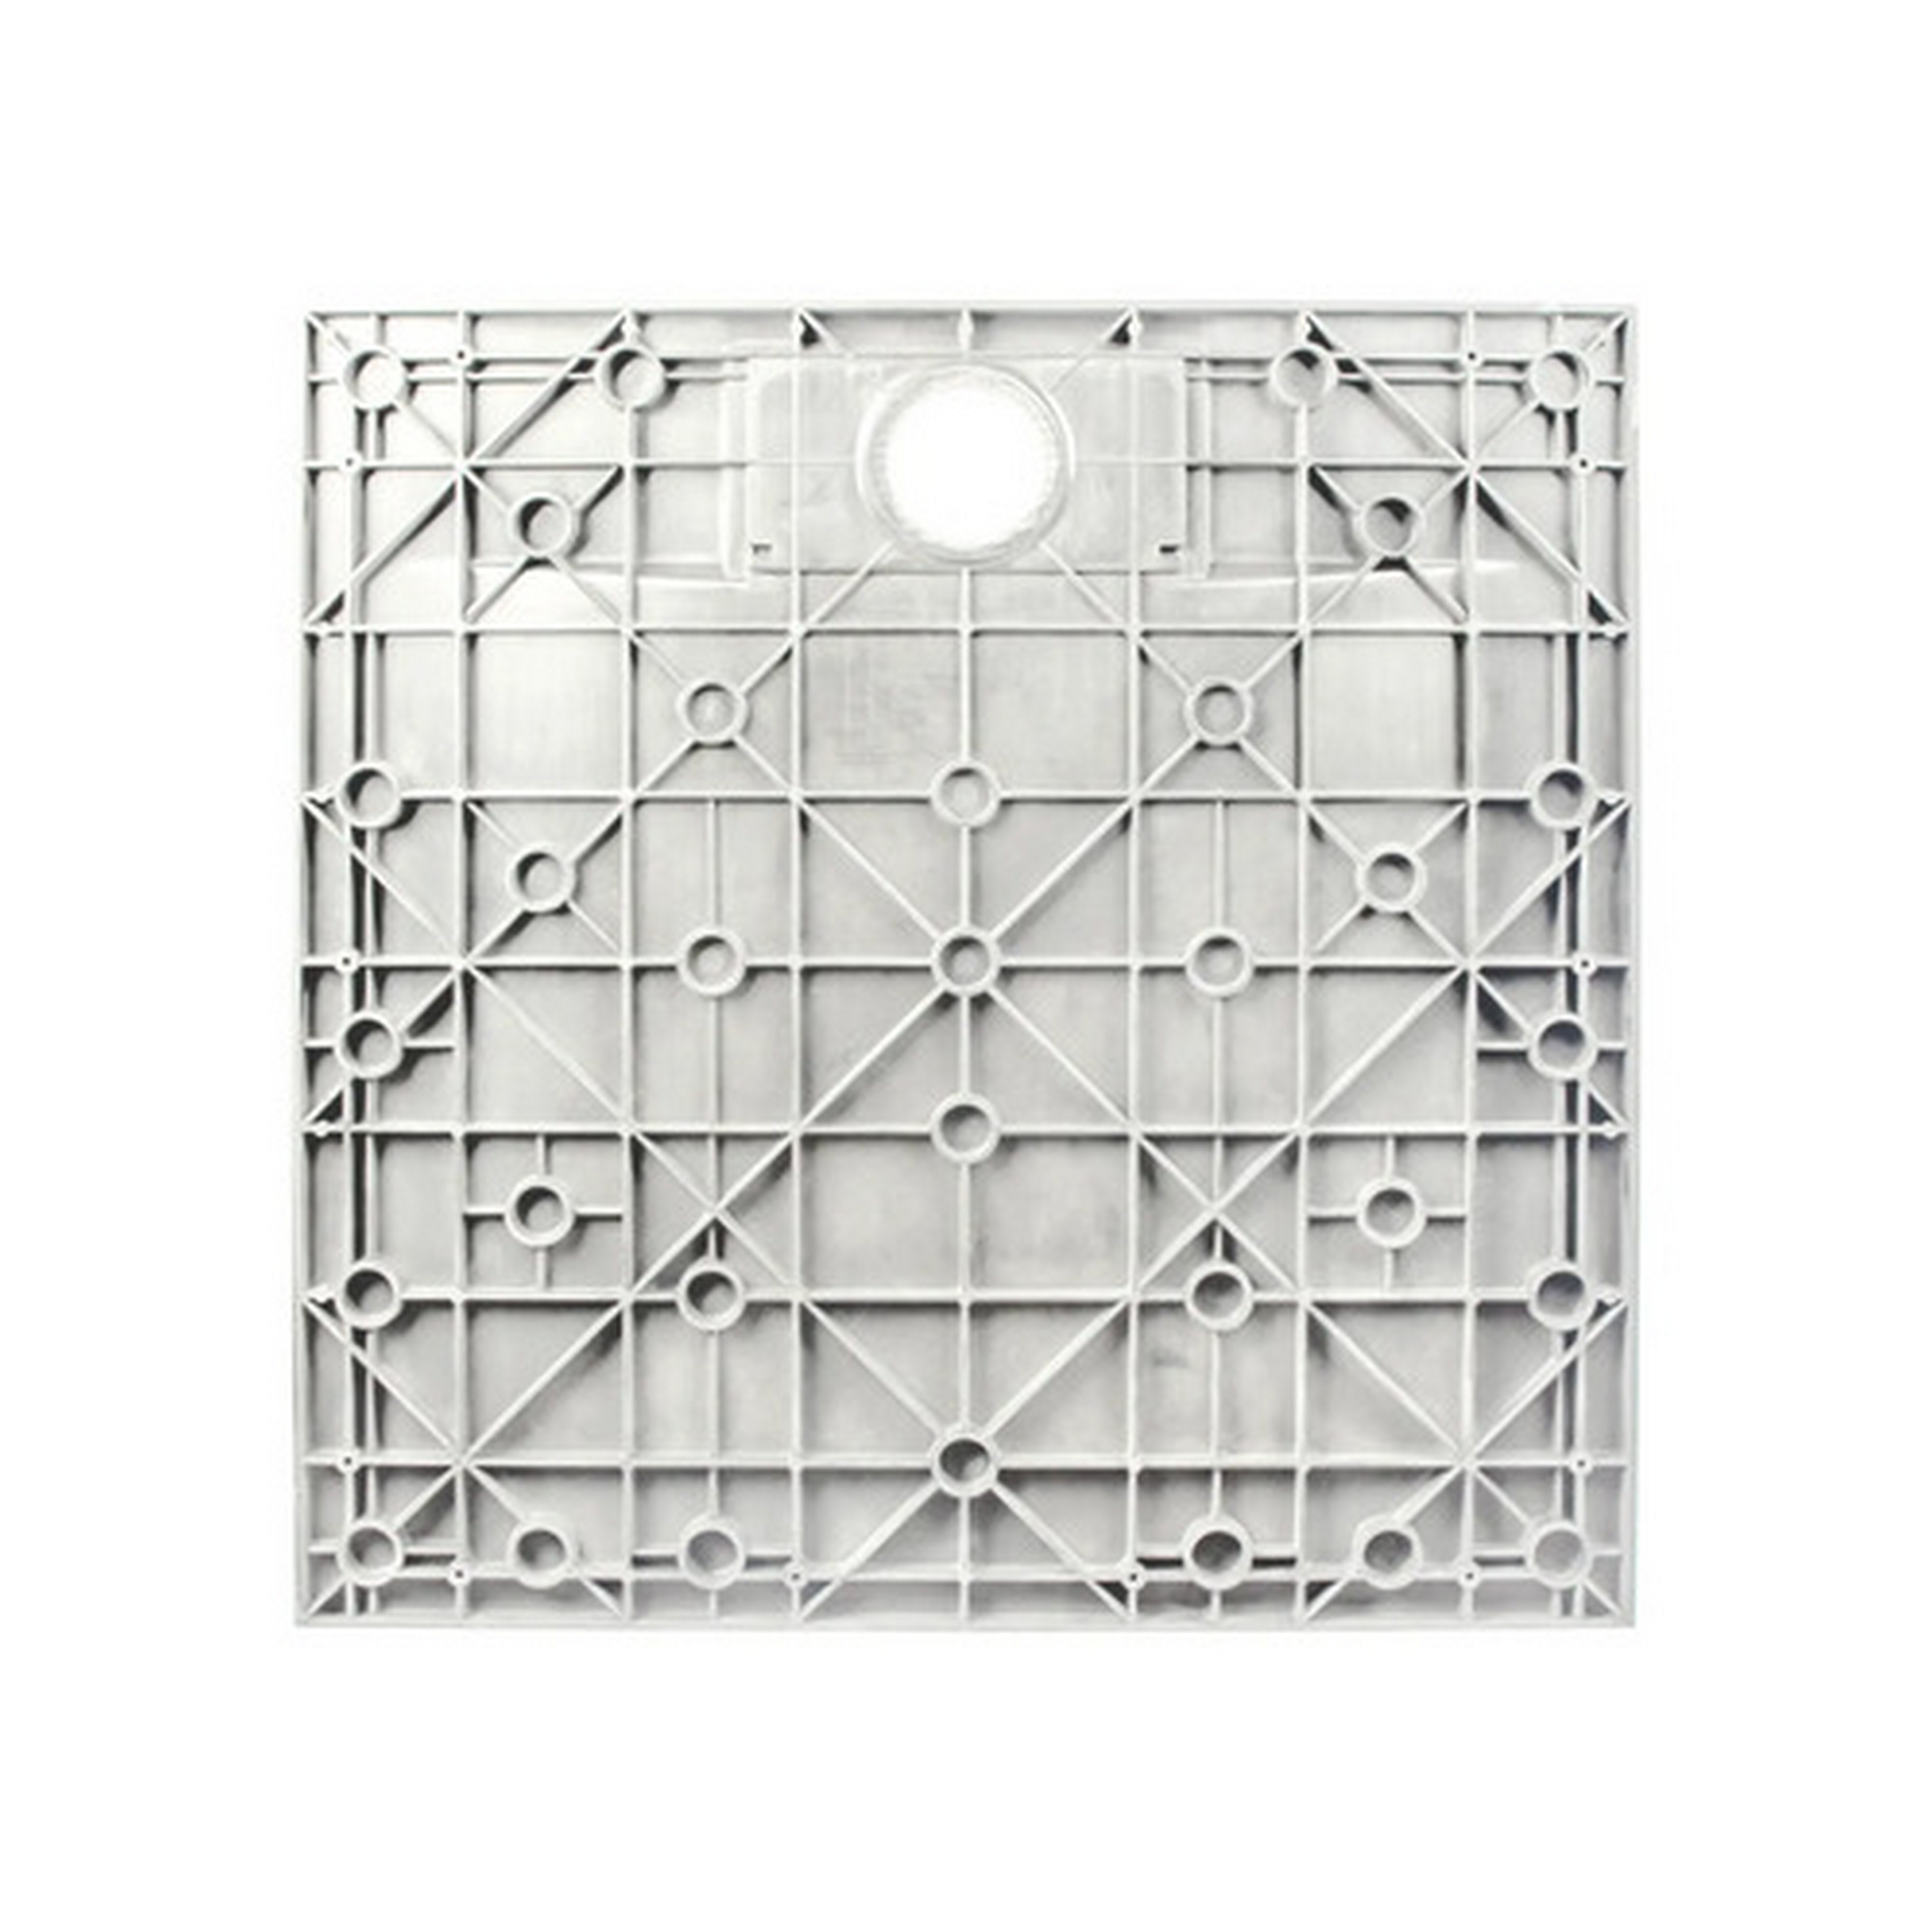 Duschwanne 'DWM-Tec' Steinstruktur weiß 70 x 160 cm + product picture